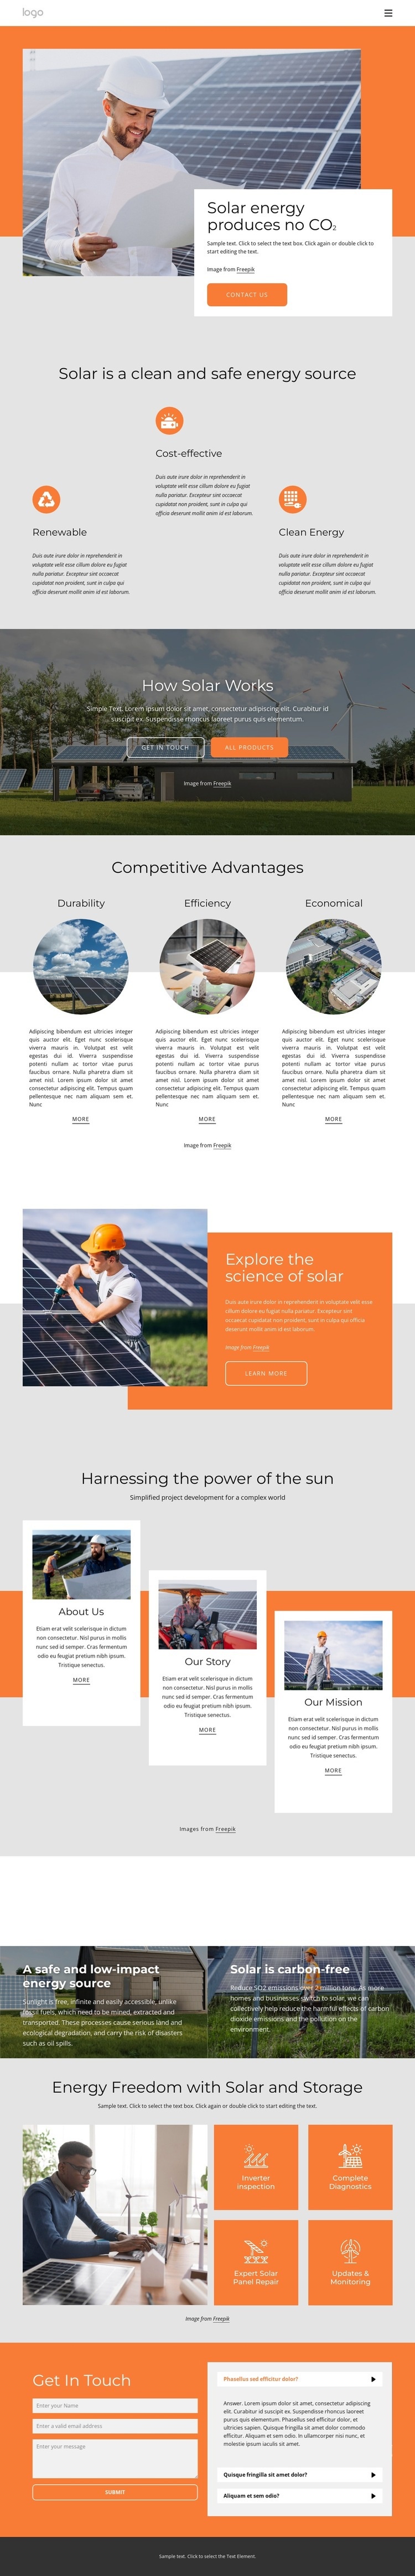 Napájejte svůj domov čistou solární energií Html Website Builder